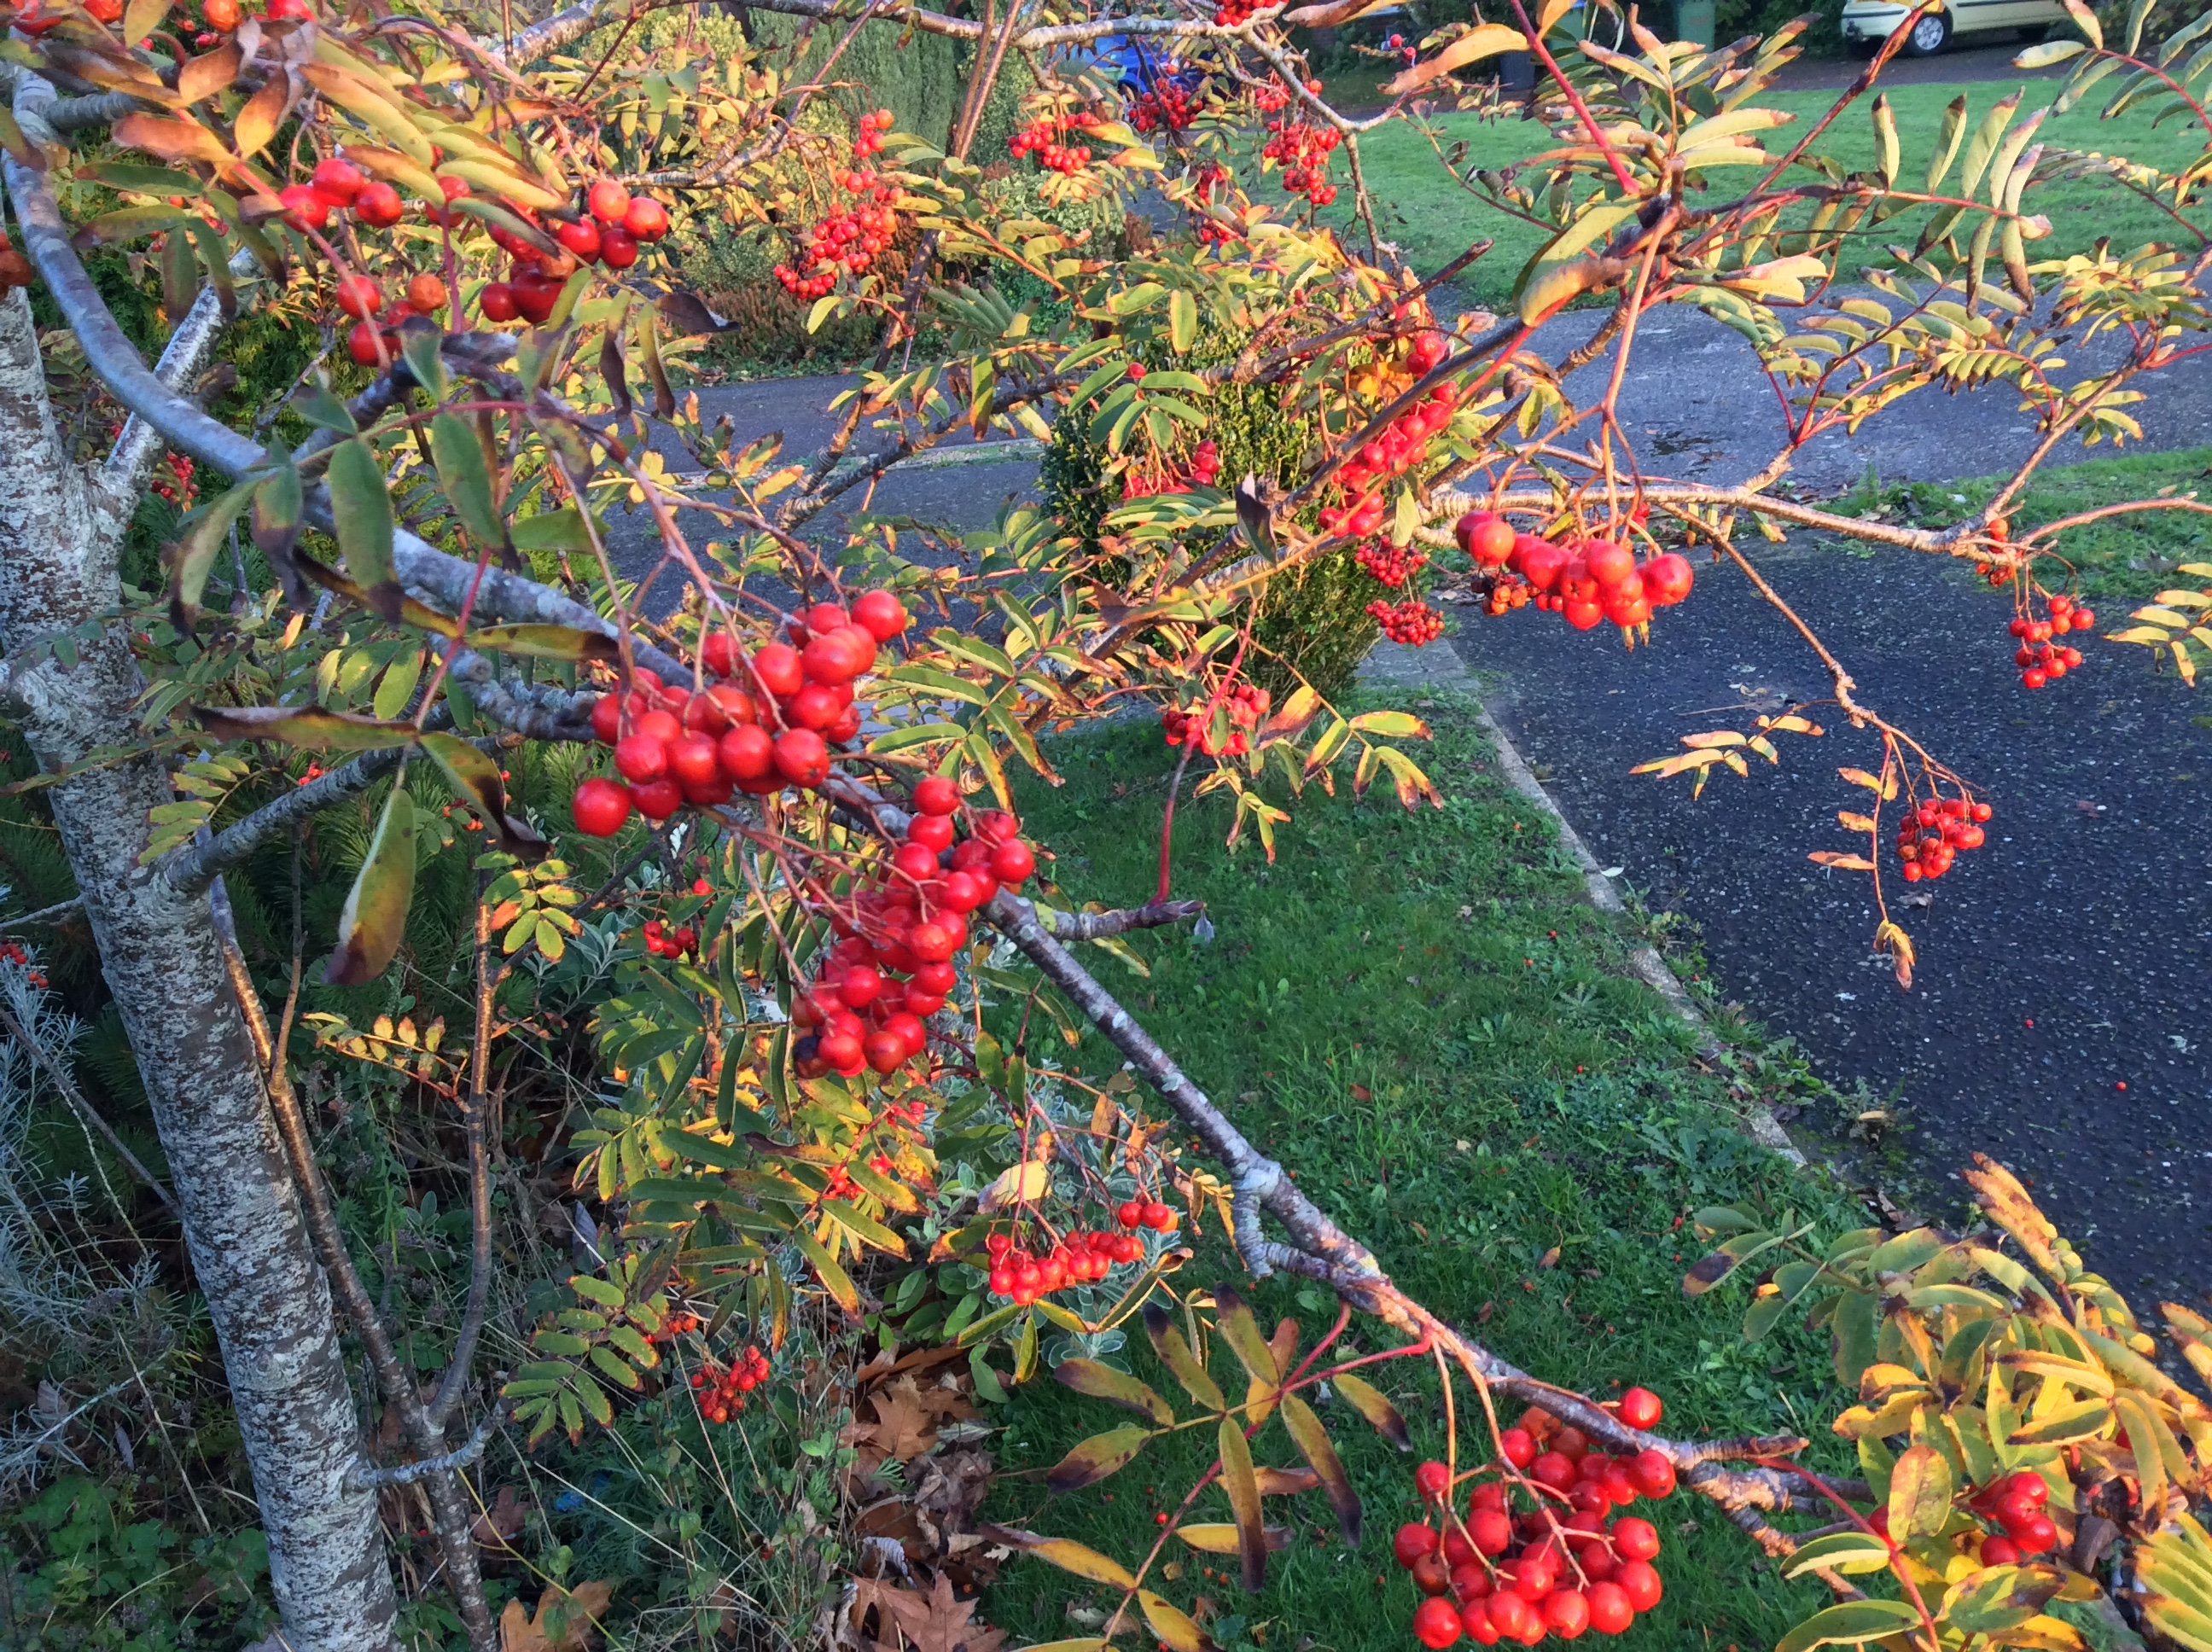 Ripe rowan berries on tree